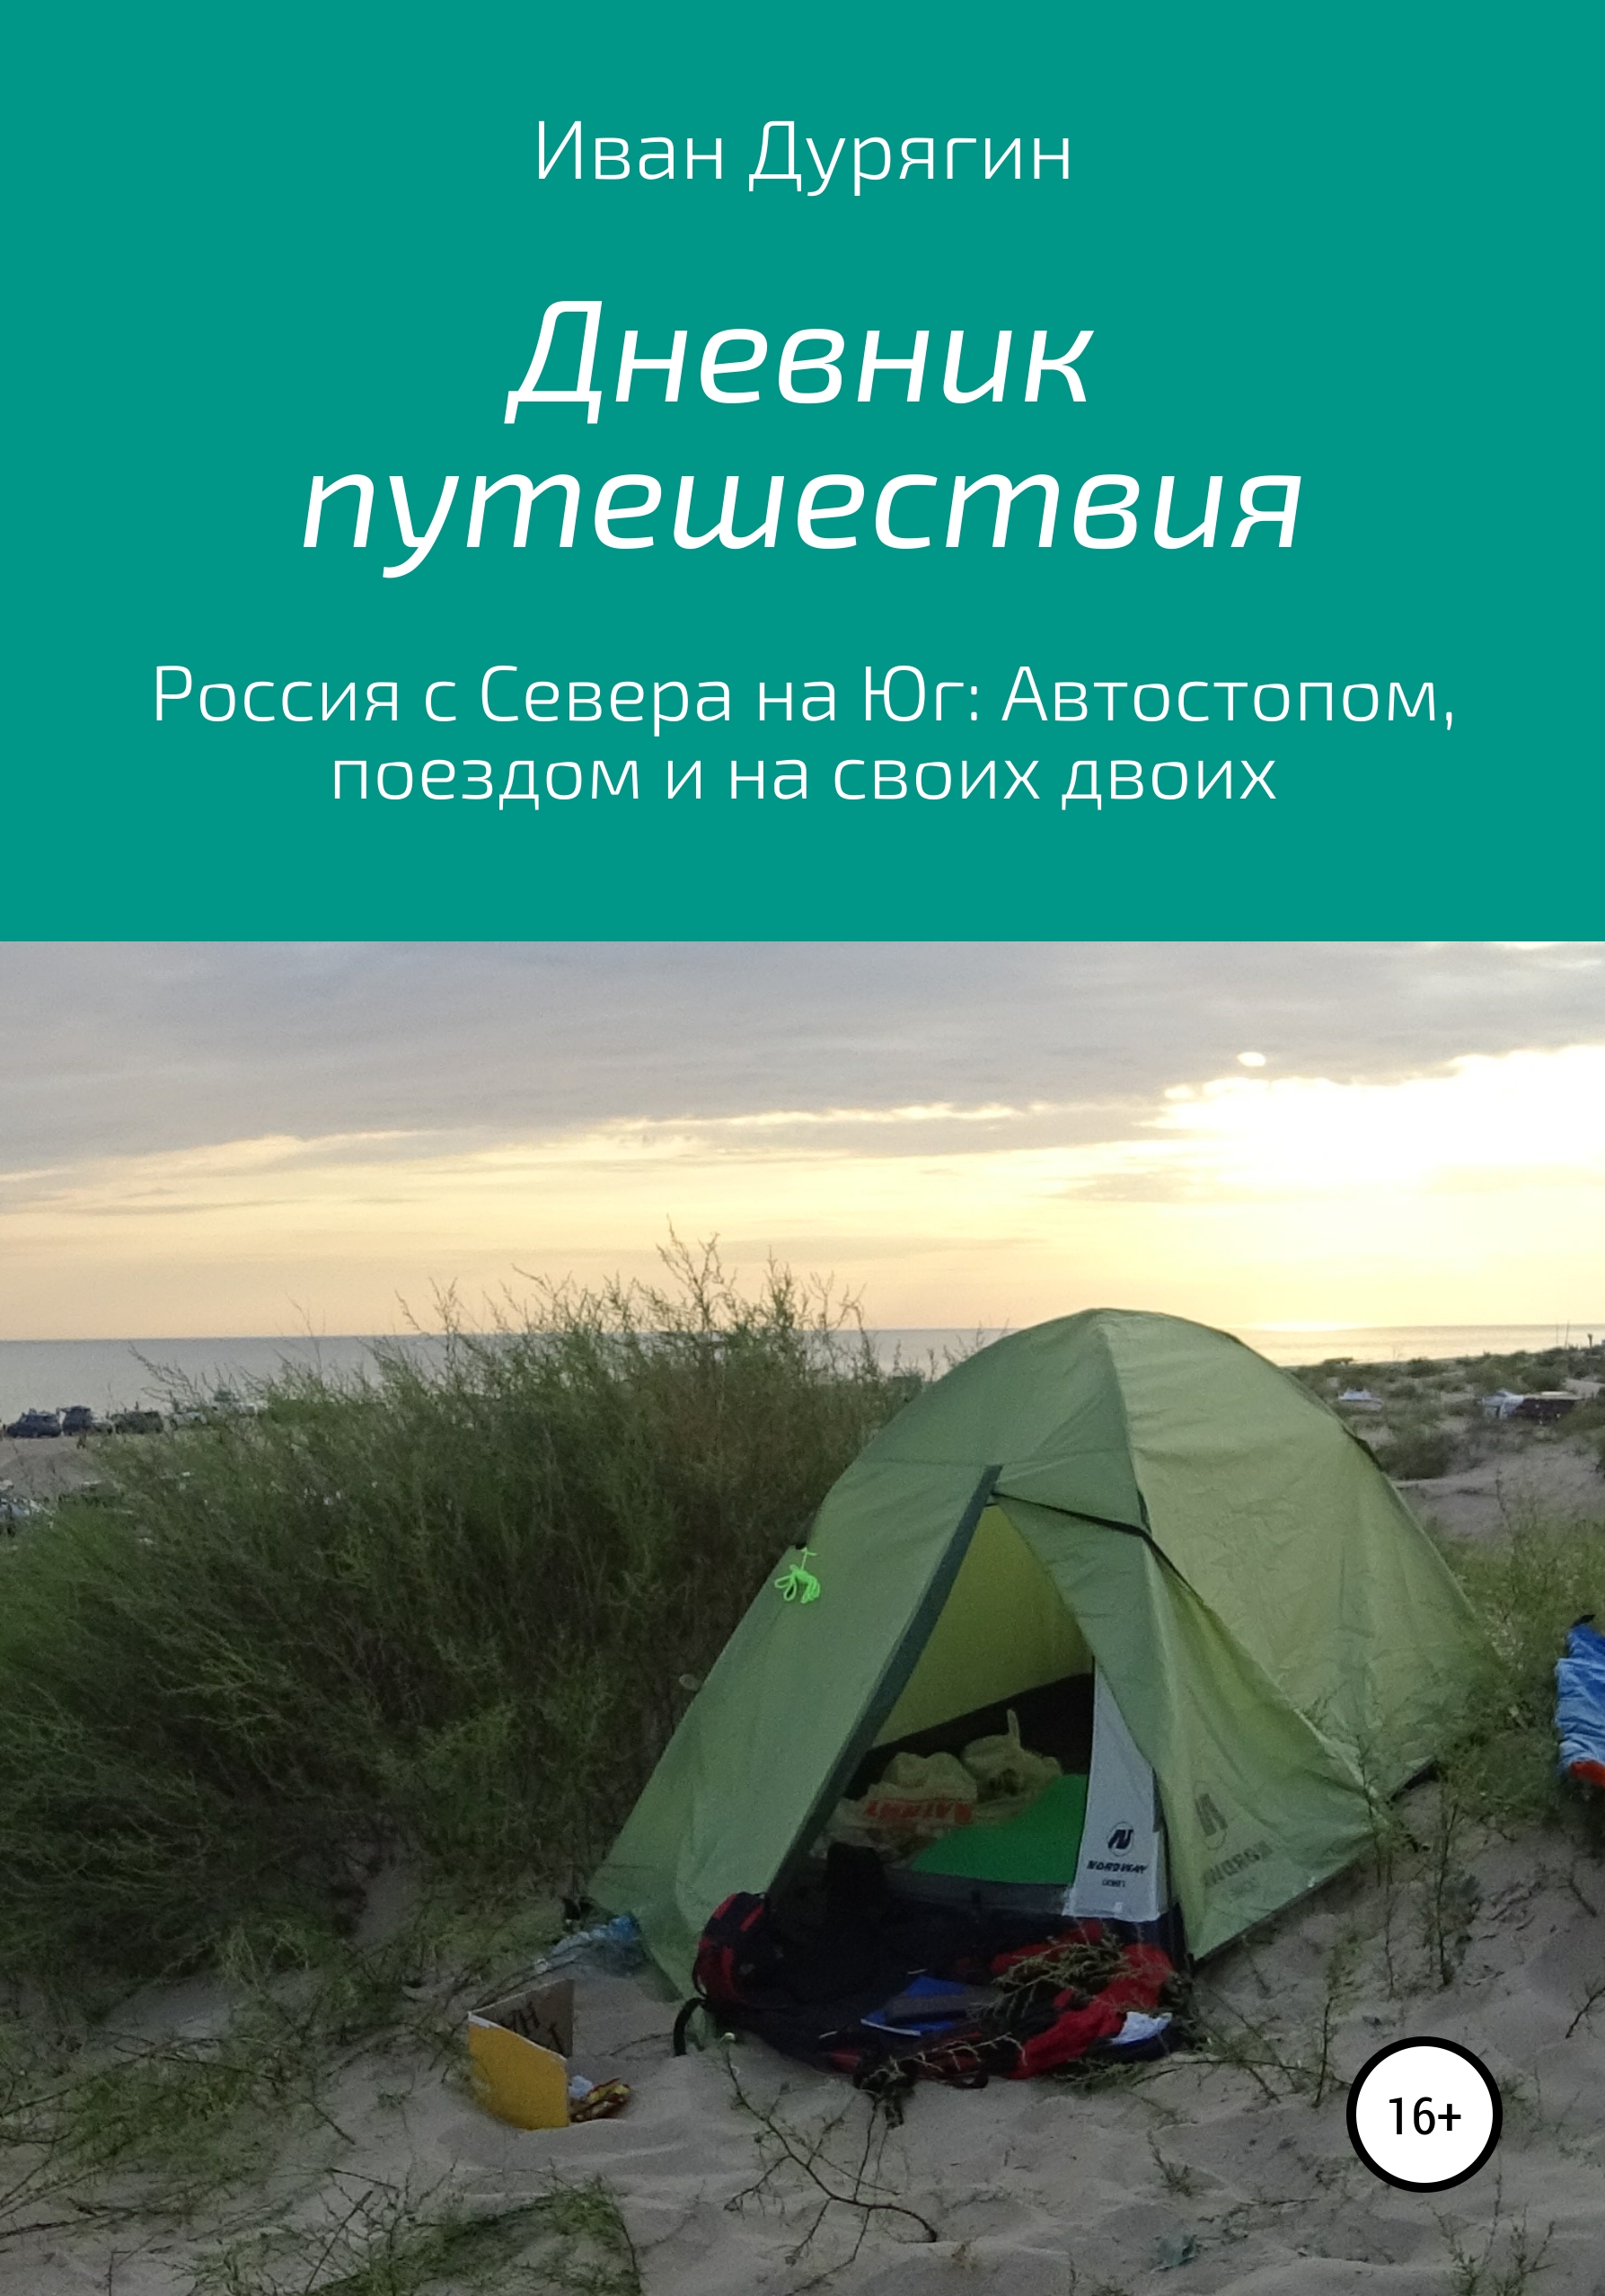 Дневник путешествия из Архангельска в Анапу